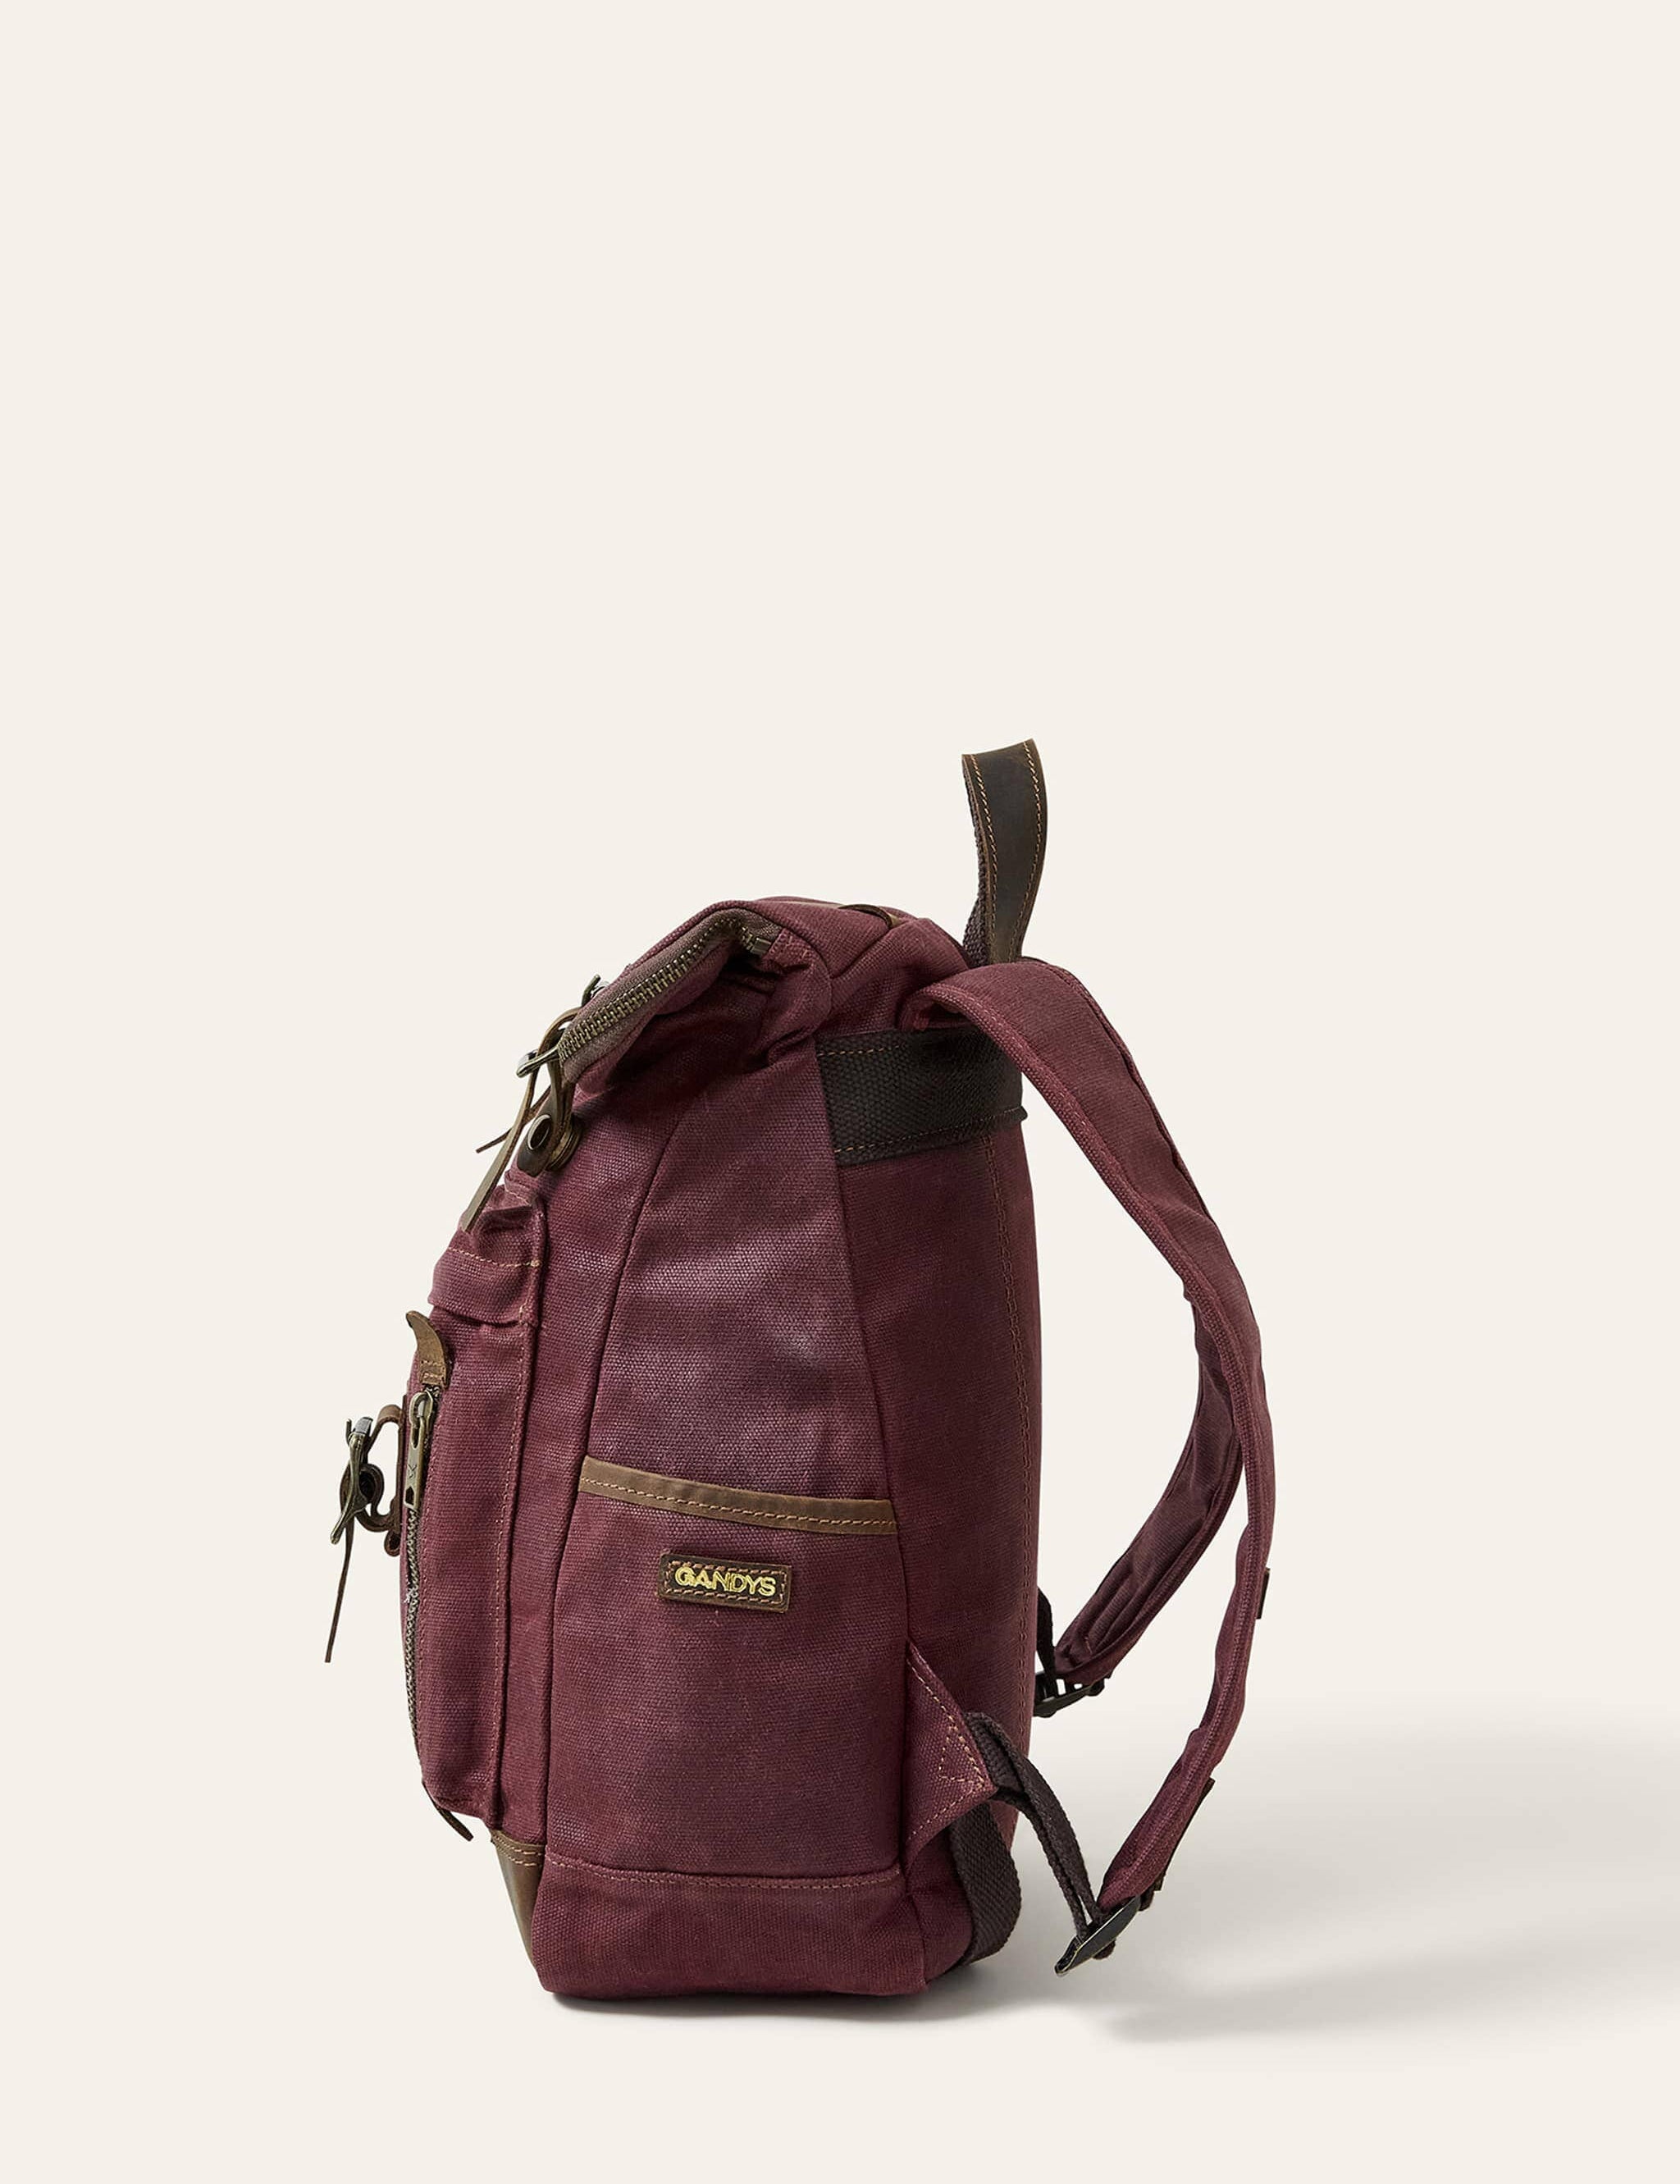 burgundy-waxed-cotton-mini-bali-backpack-198589.jpg